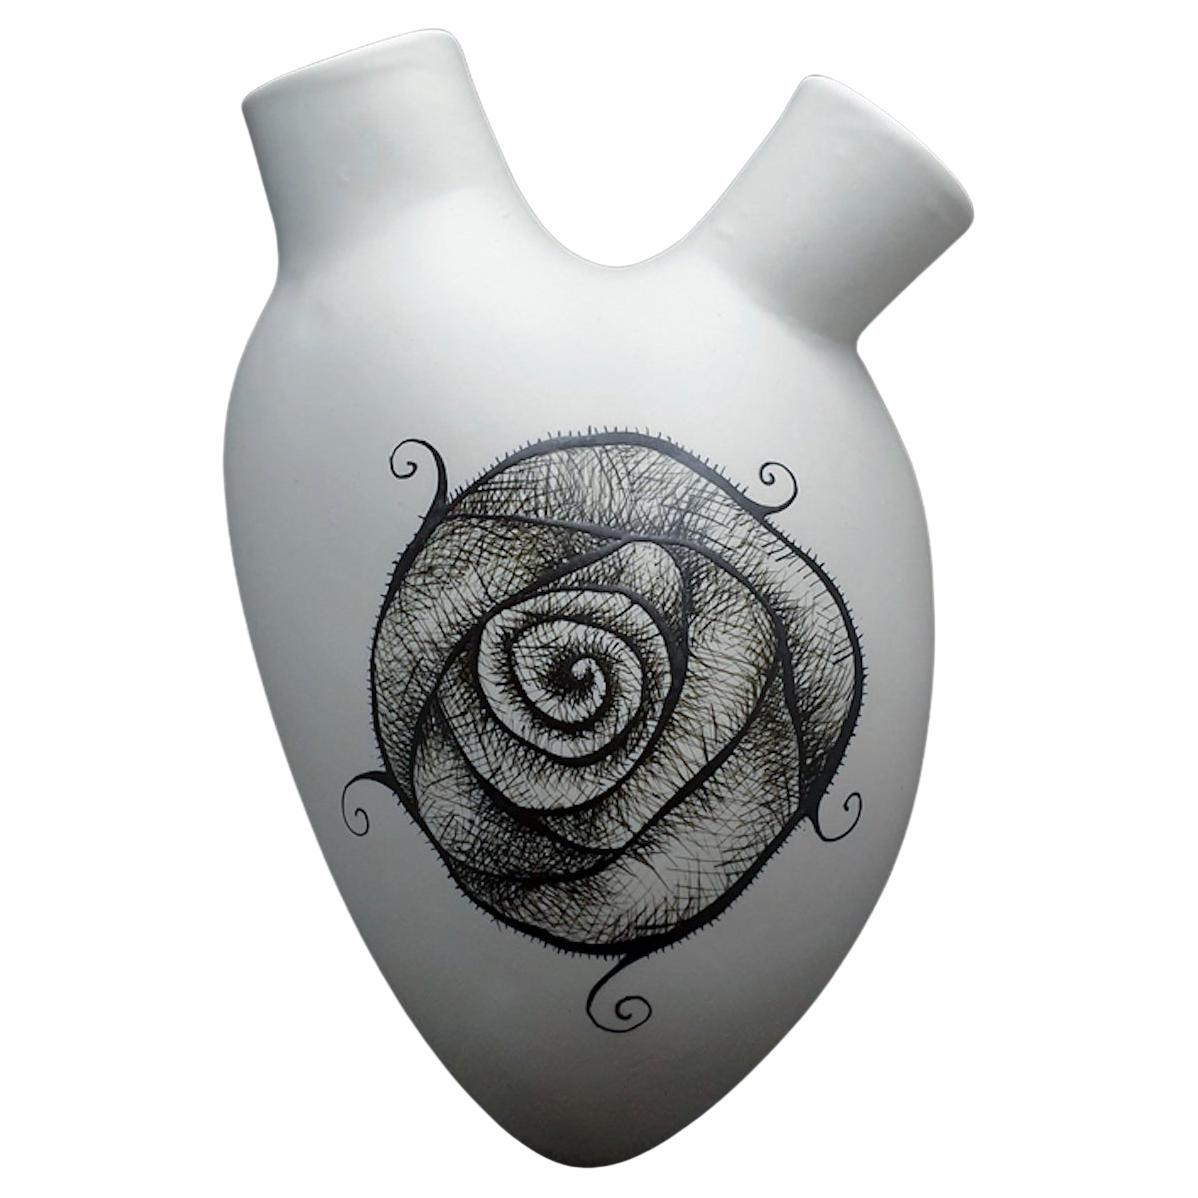 Ensemble de 8 vases de luxe « Roses », fabriqués à la main en Italie, 2021, peints à la main